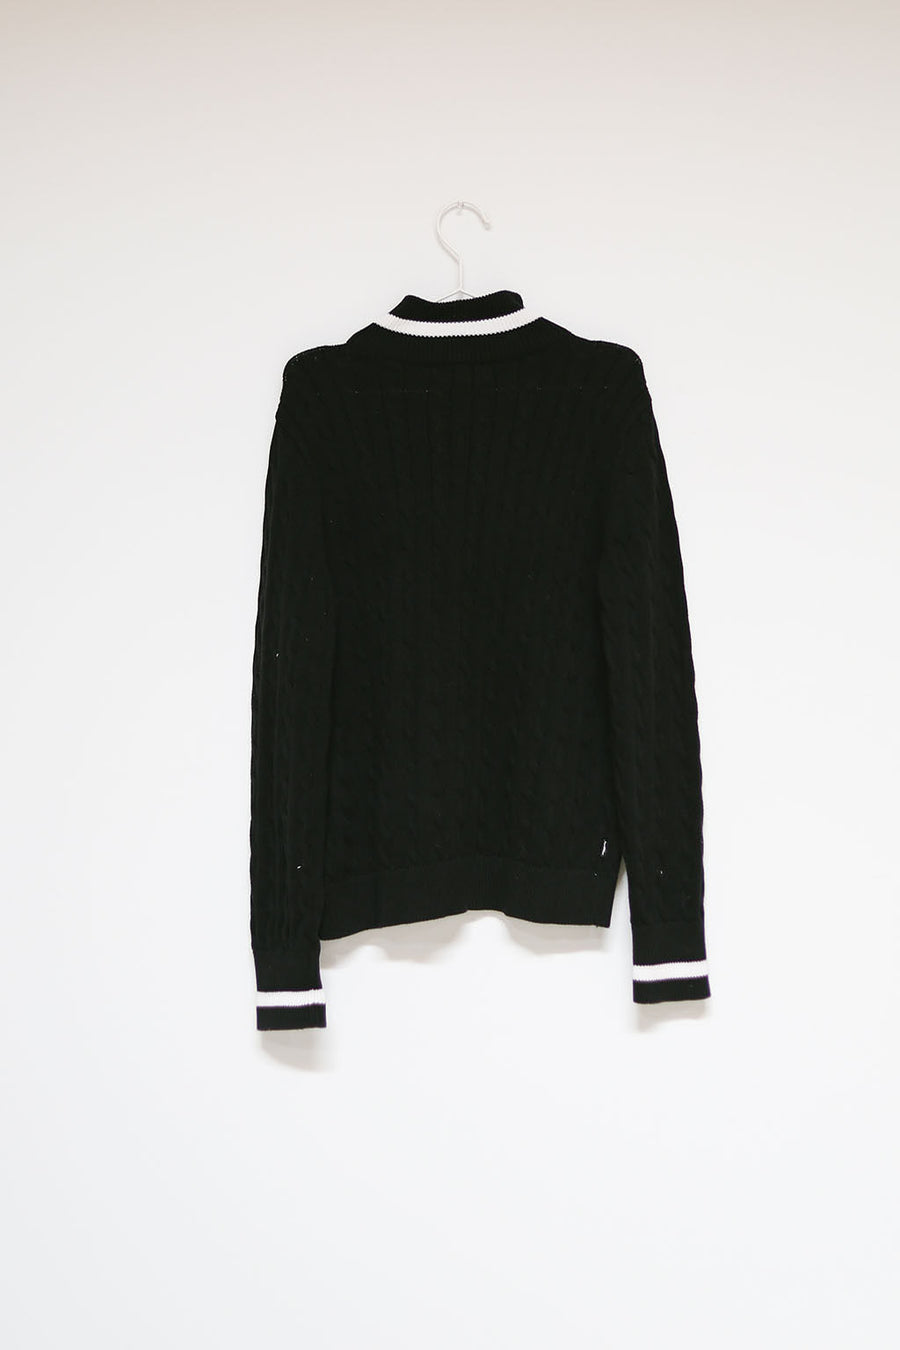 Ralph Lauren Sweater by Luna B Vintage